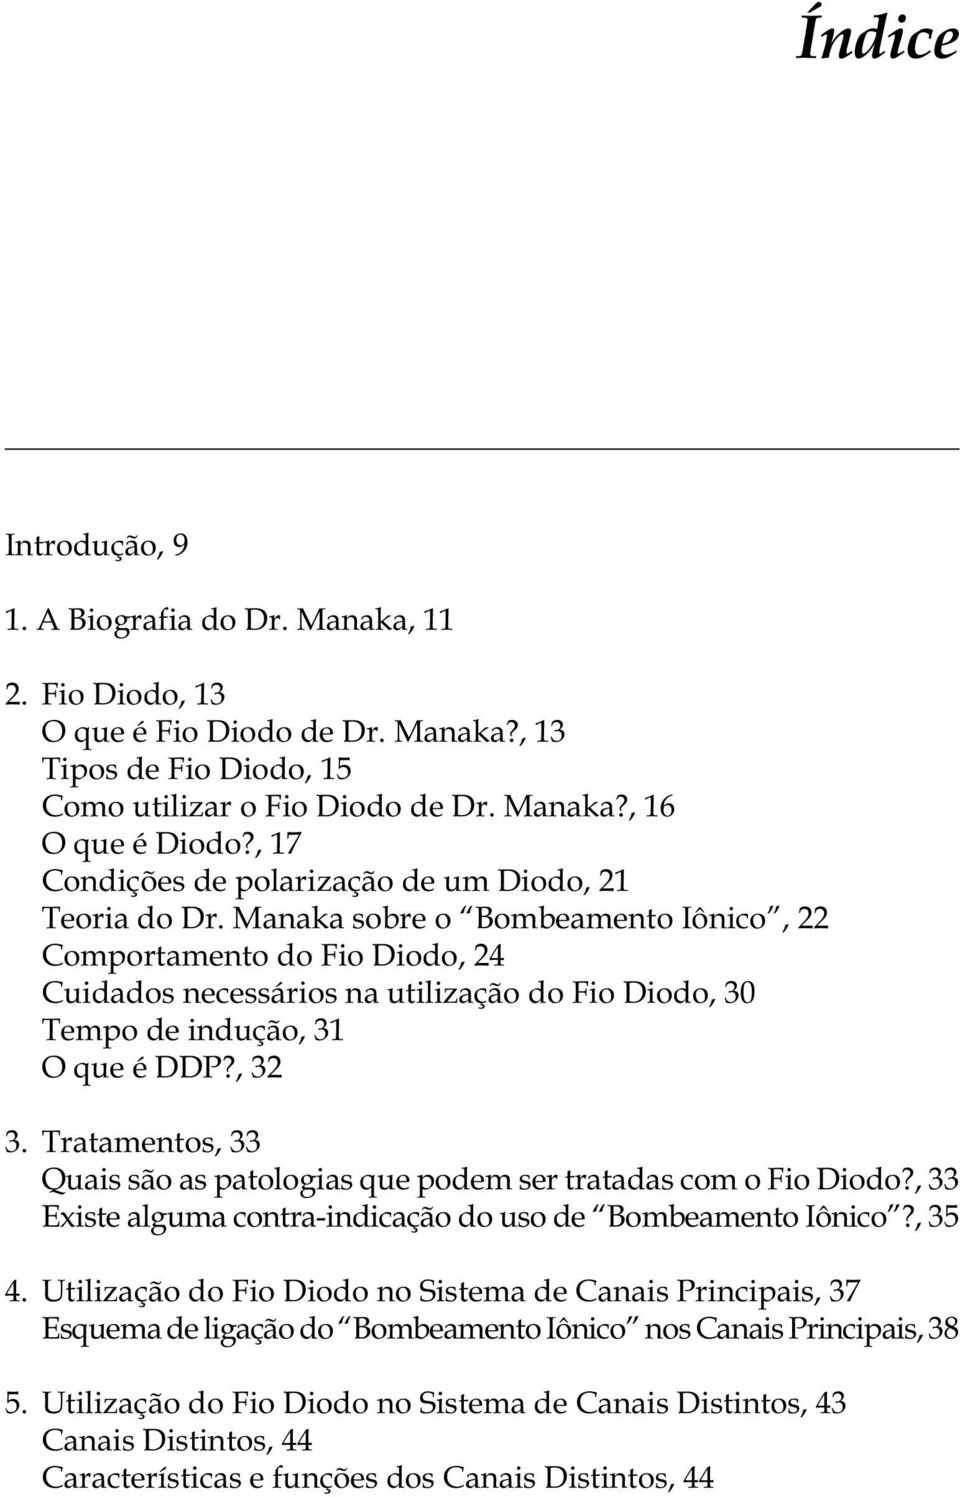 Manaka sobre o Bombeamento Iônico, 22 Comportamento do Fio Diodo, 24 Cuidados necessários na utilização do Fio Diodo, 30 Tempo de indução, 31 O que é DDP?, 32 3.